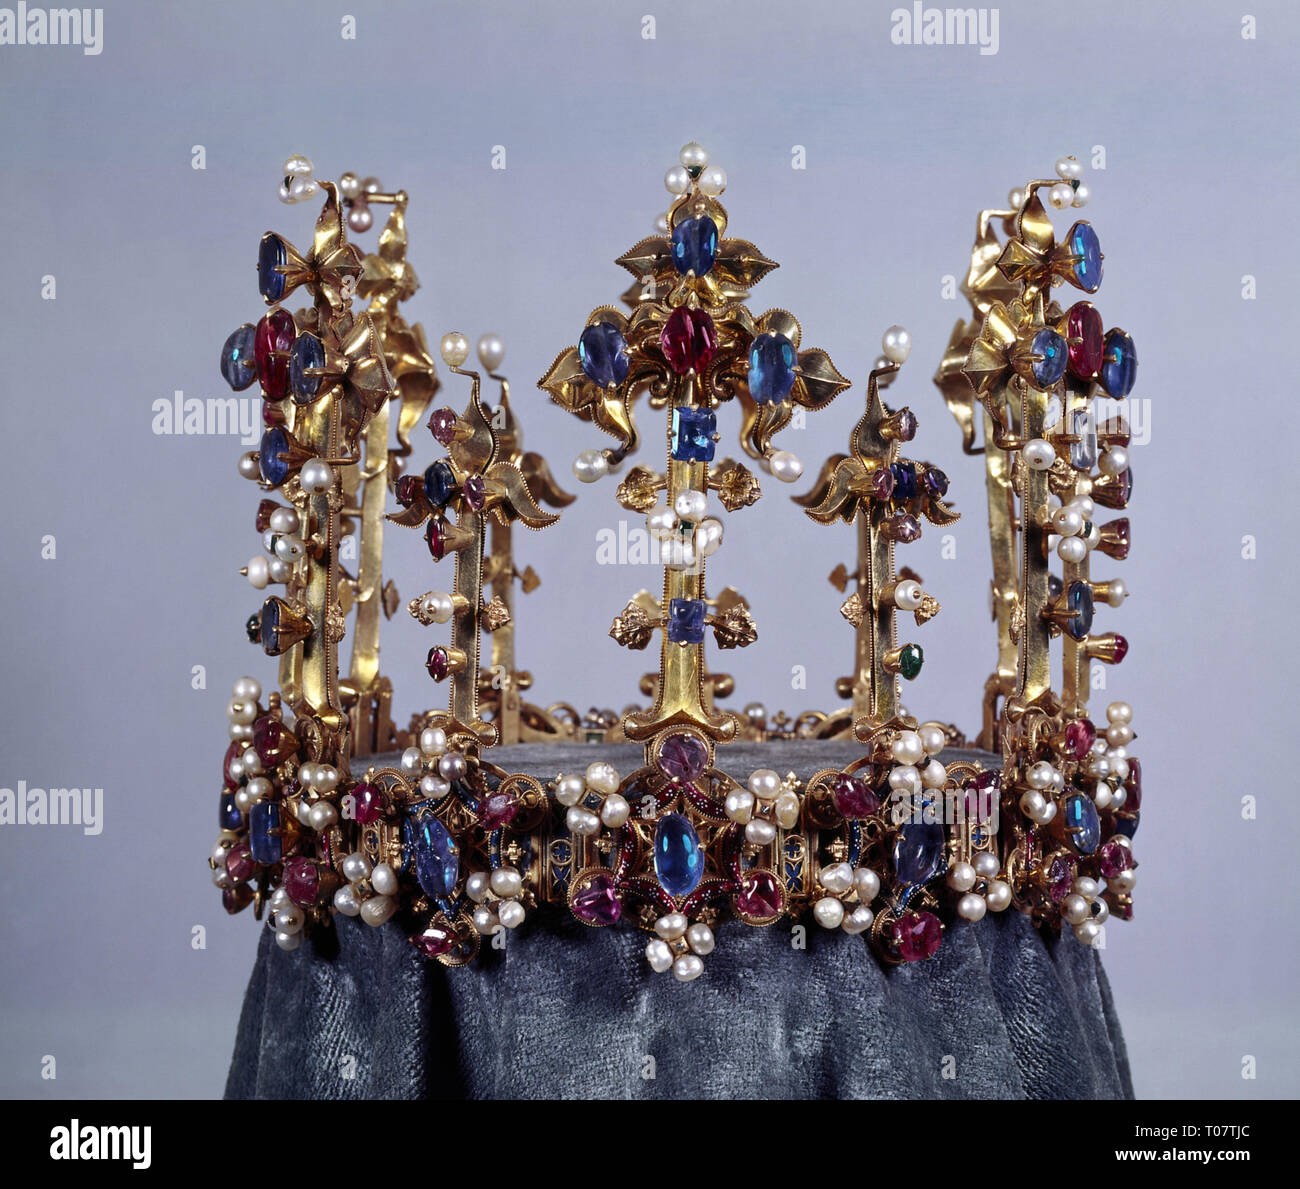 Les bijoux, les bijoux de la couronne, couronne, couronne royale anglaise circa 1350 (Edouard III), Conseil du Trésor, le palais royal, Munich, Allemagne,-Additional-Rights Clearance-Info-Not-Available Banque D'Images